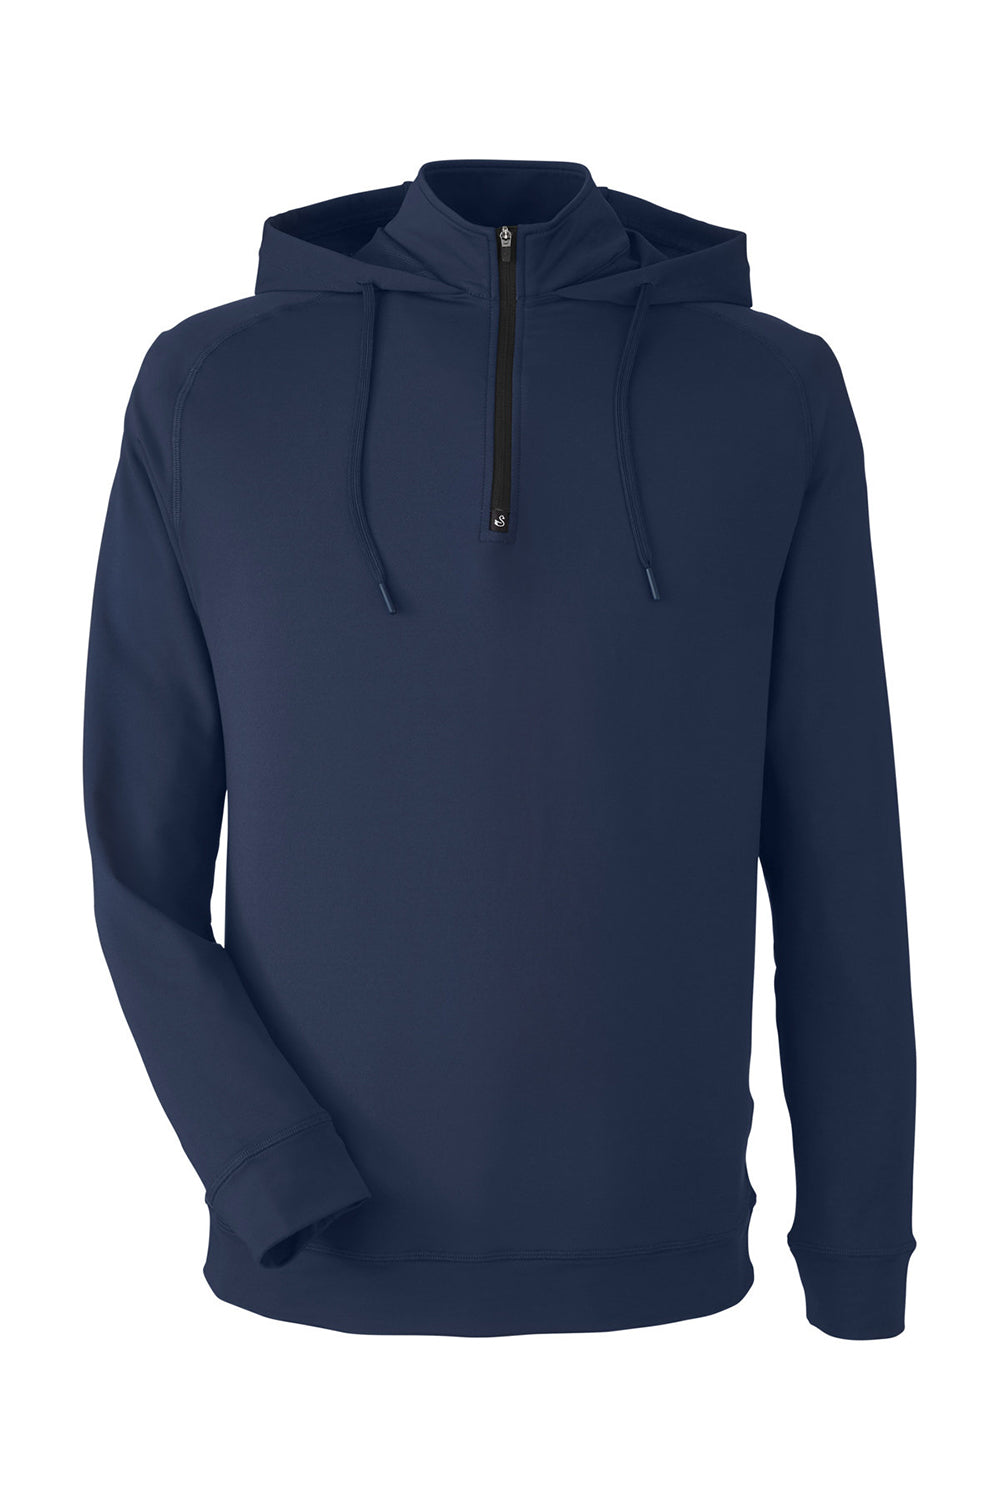 Swannies Golf SWV600 Mens Vandyke 1/4 Zip Hooded  Sweatshirt Hoodie Navy Blue Flat Front